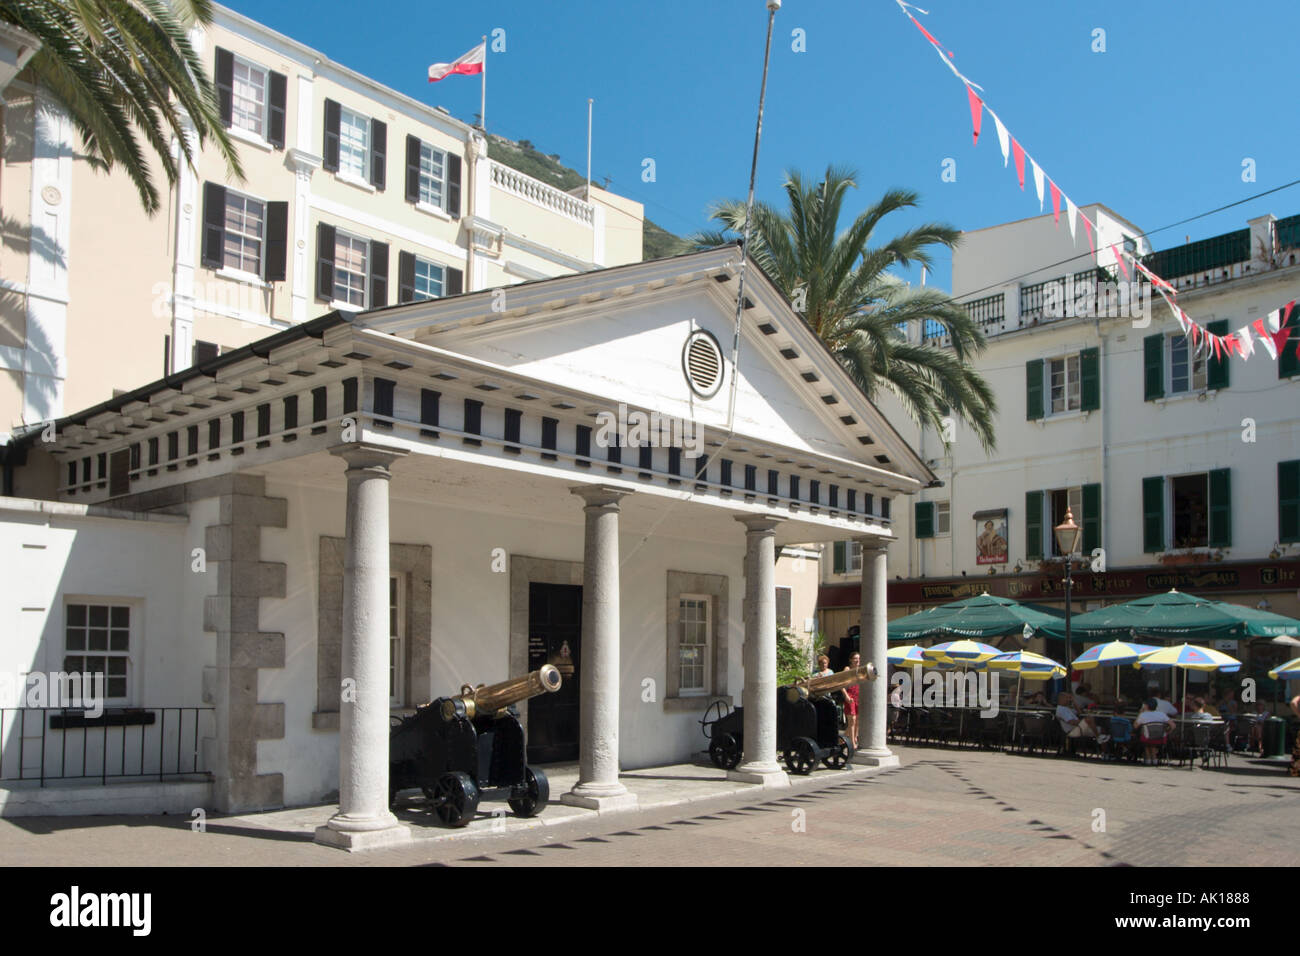 La casa de guardia en el convento (residencia del Gobernador), Calle Principal, Gibraltar, España Foto de stock